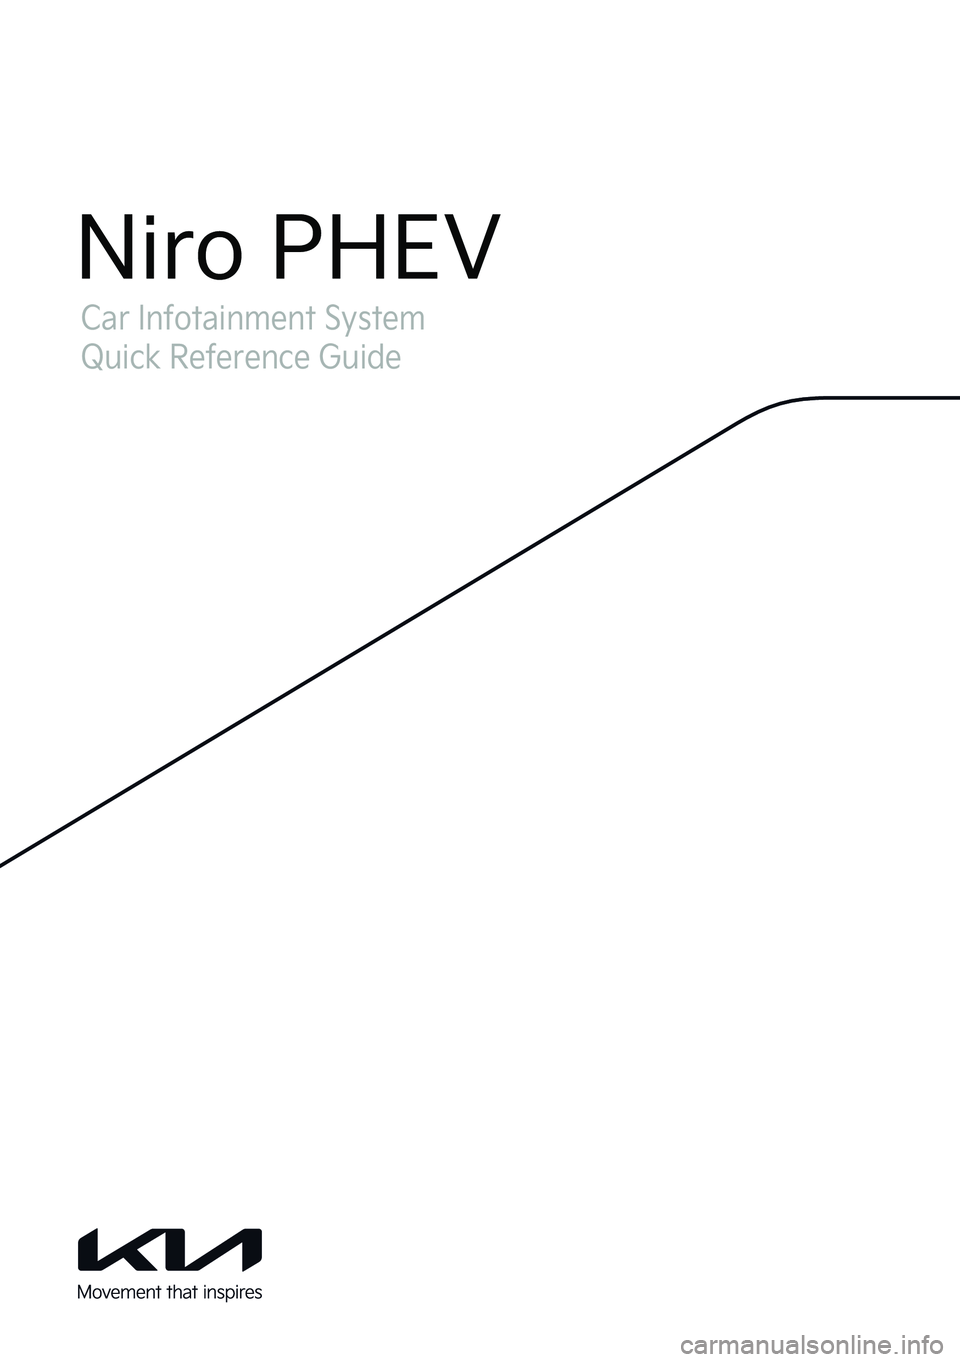 KIA NIRO PHEV 2023  Navigation System Quick Reference Guide Car Infotainment System
Quick Reference Guide
Niro PHEV  